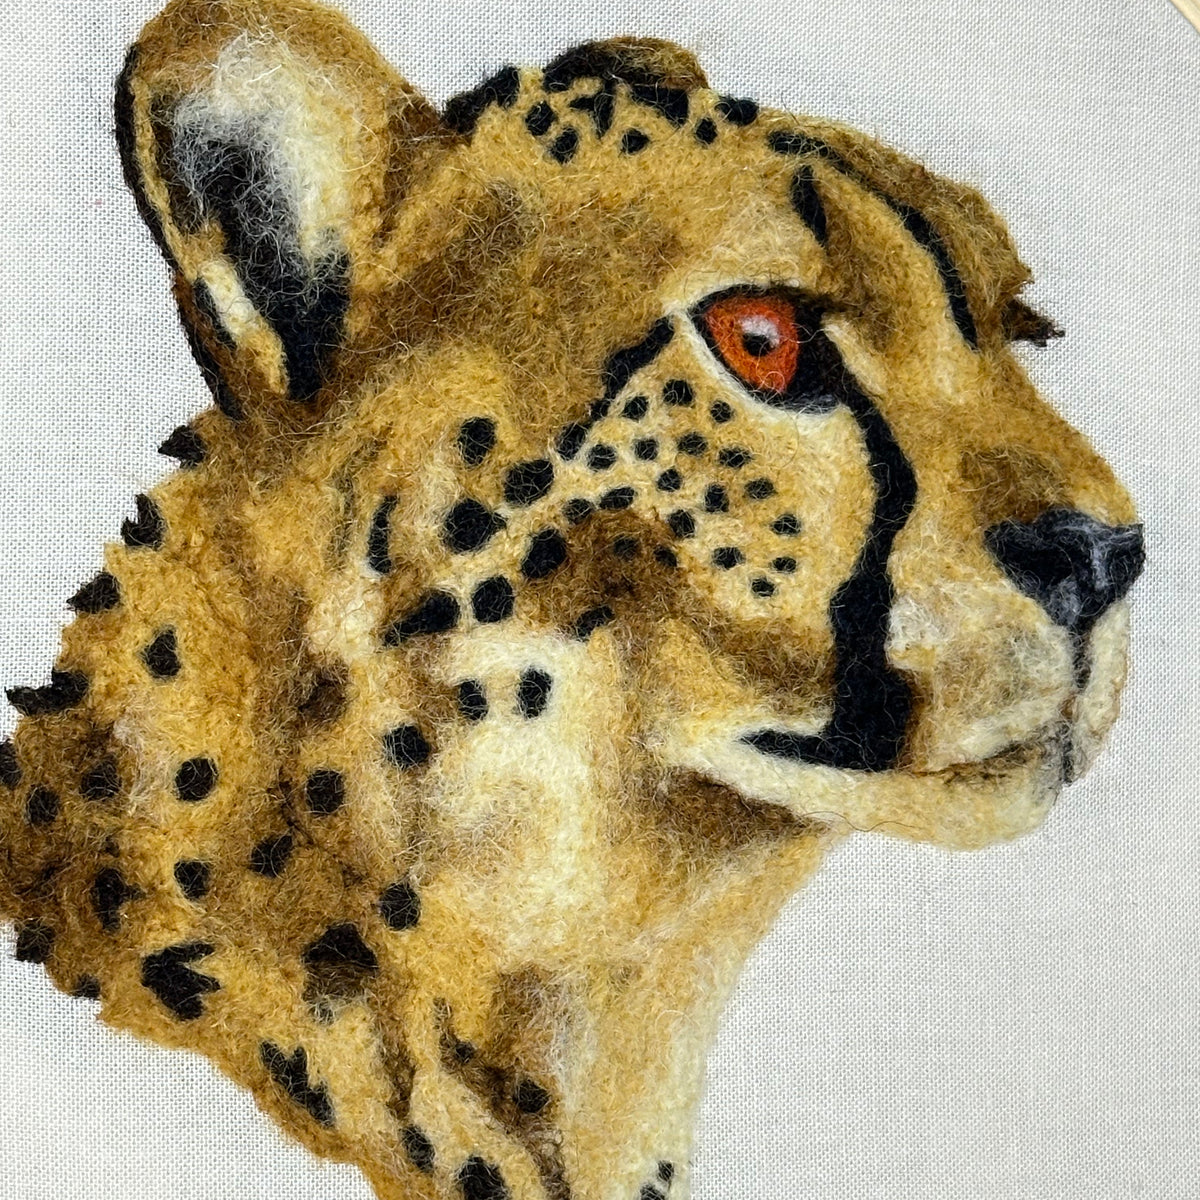 'Cheetah' needlefelted portrait